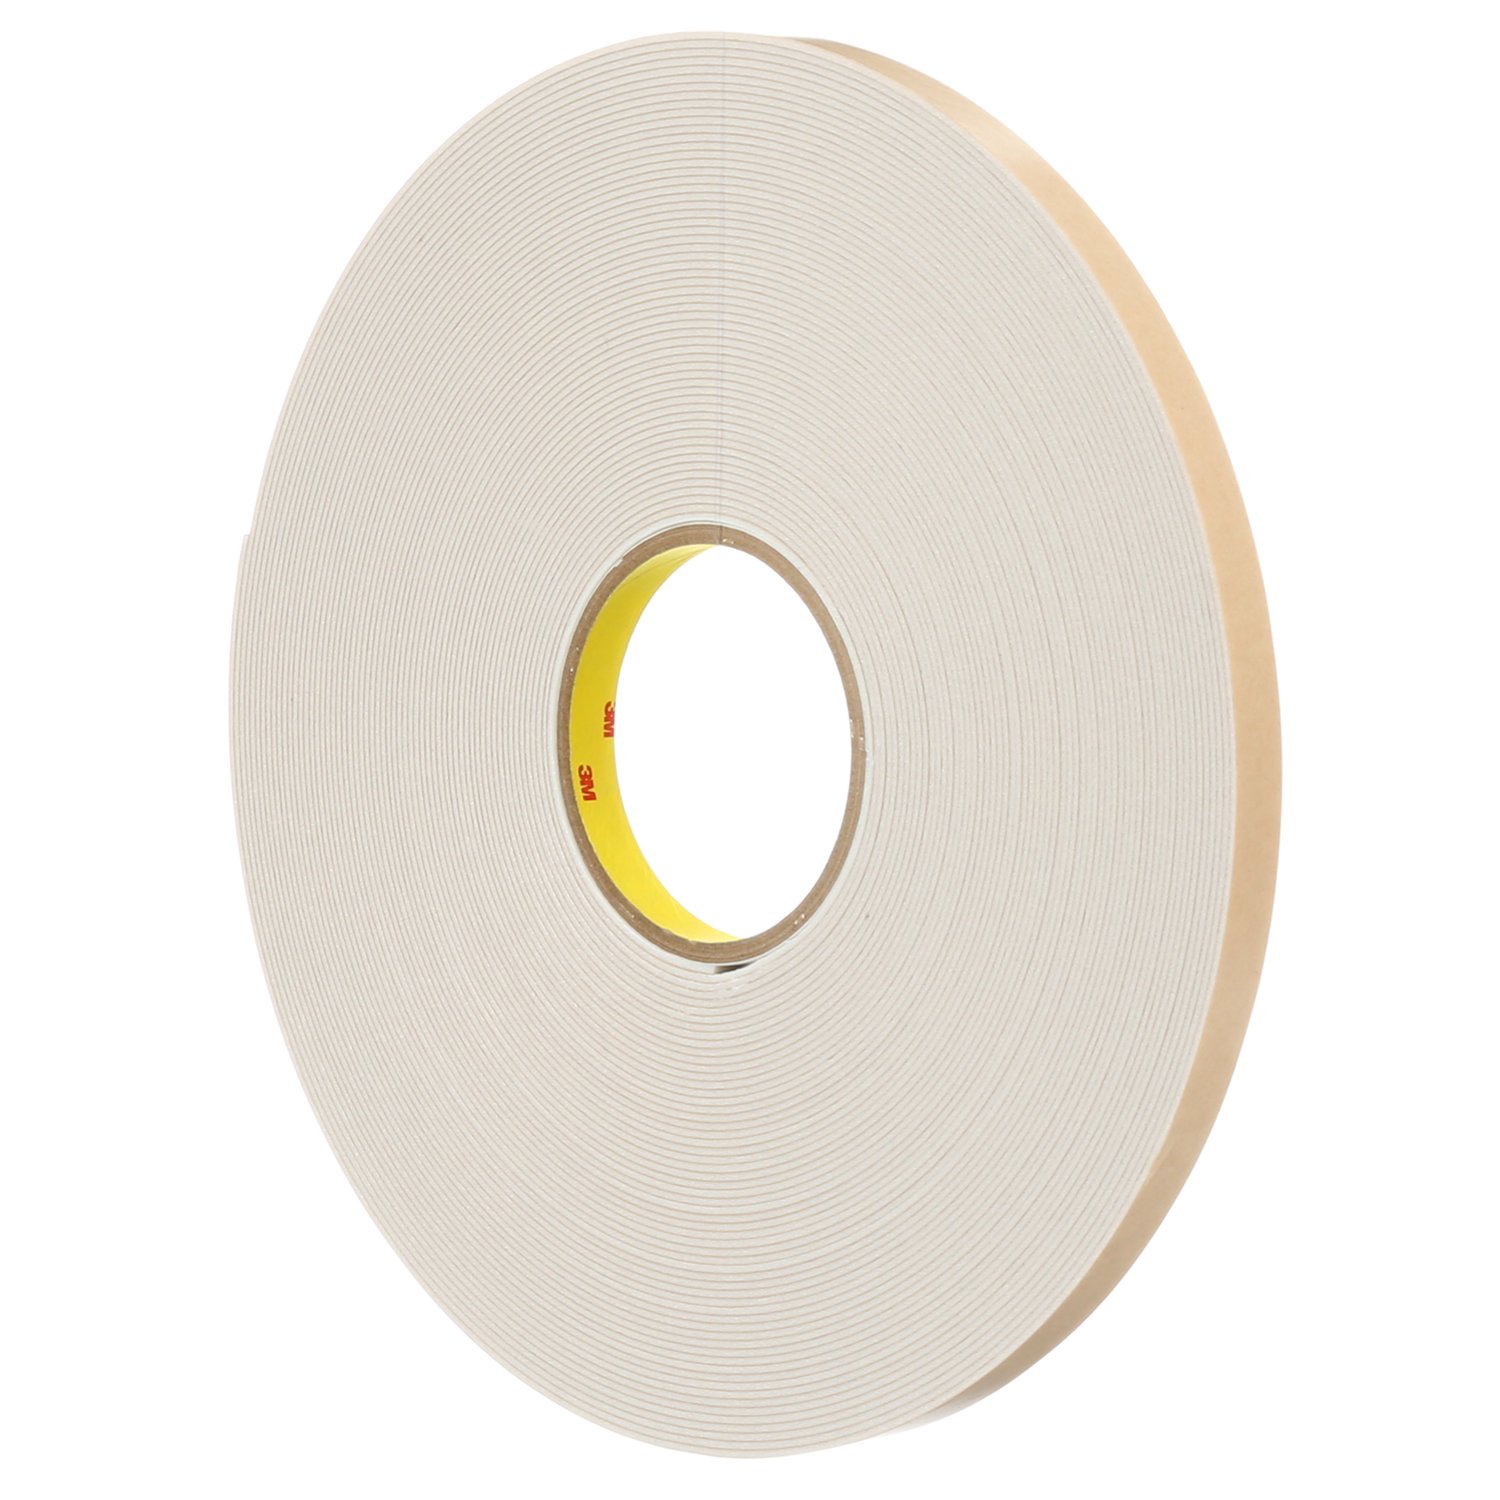 7100035721 - 3M Double Coated Polyethylene Foam Tape 4496W, White, 54 in x 36 Yds,
62 mil, 1 roll per case